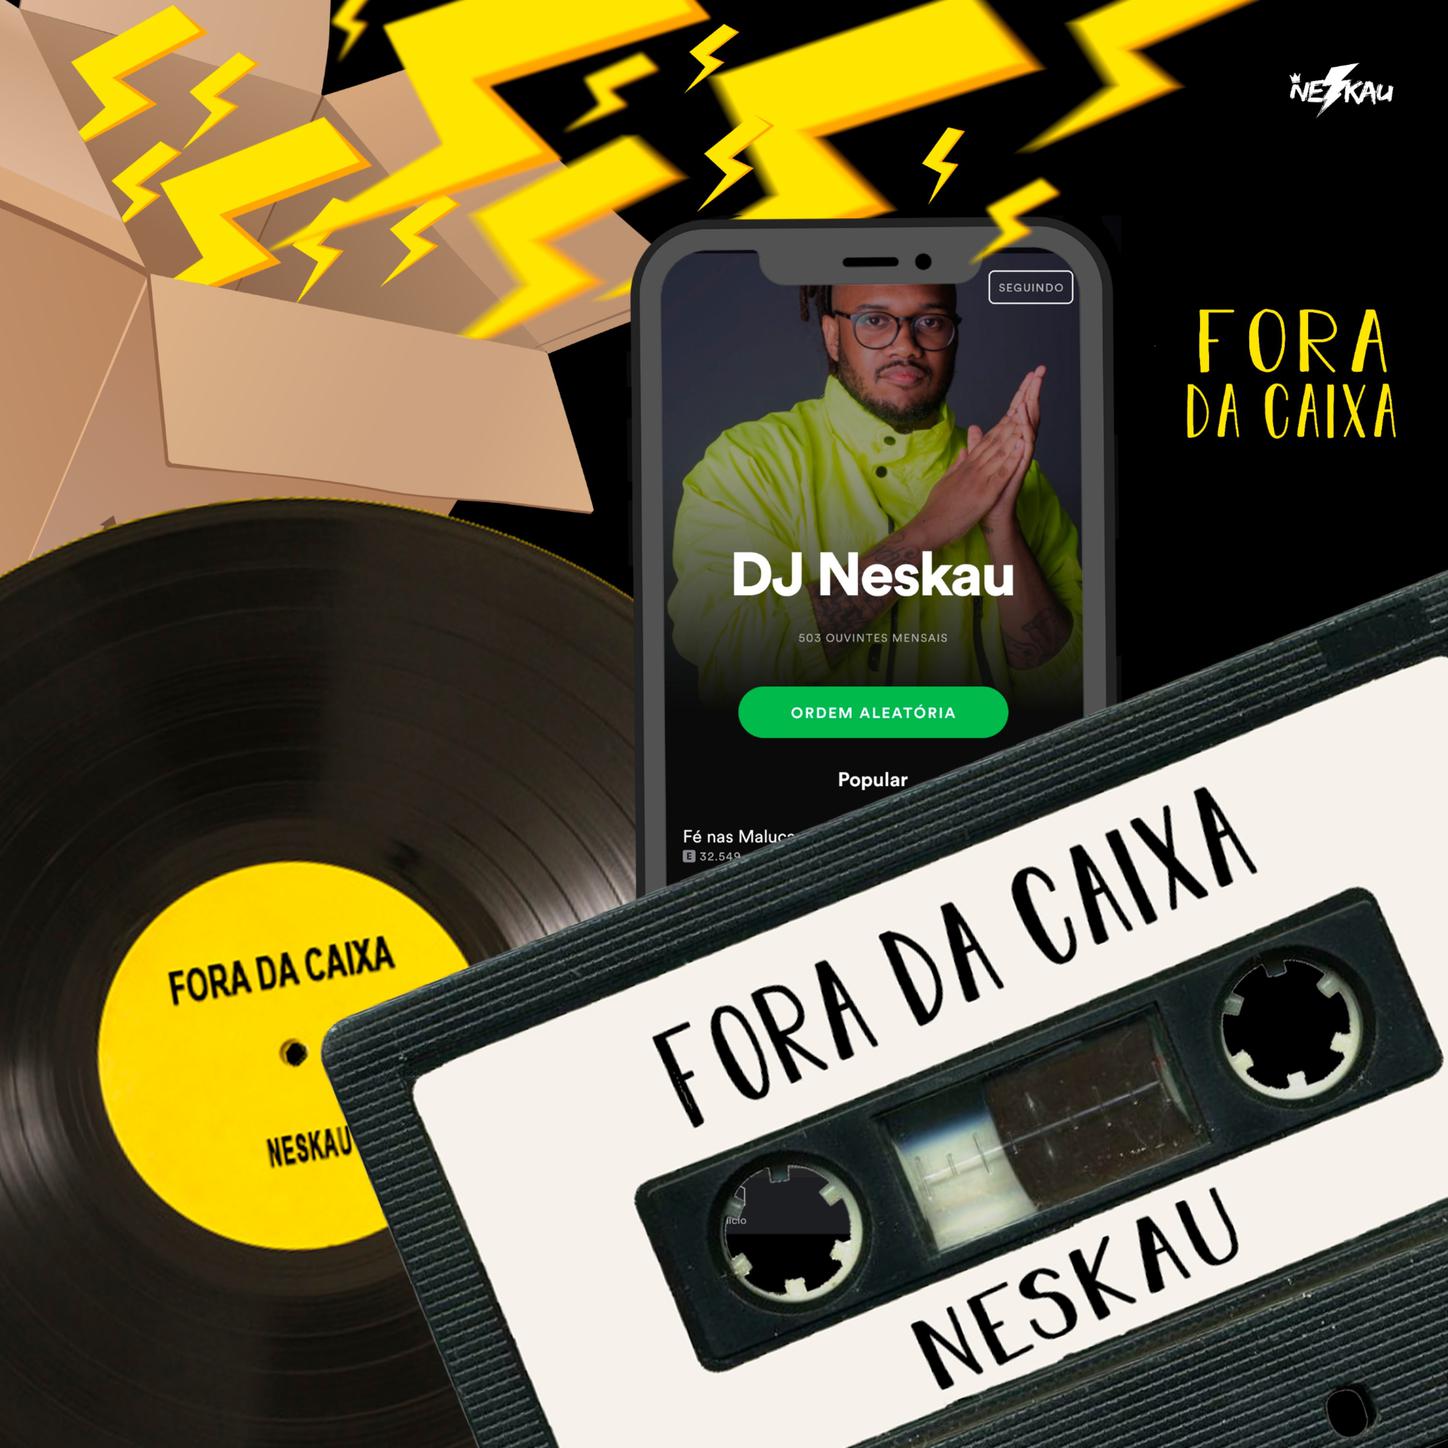 DJ Neskau - Menino Vadio (Ep Fora da Caixa)